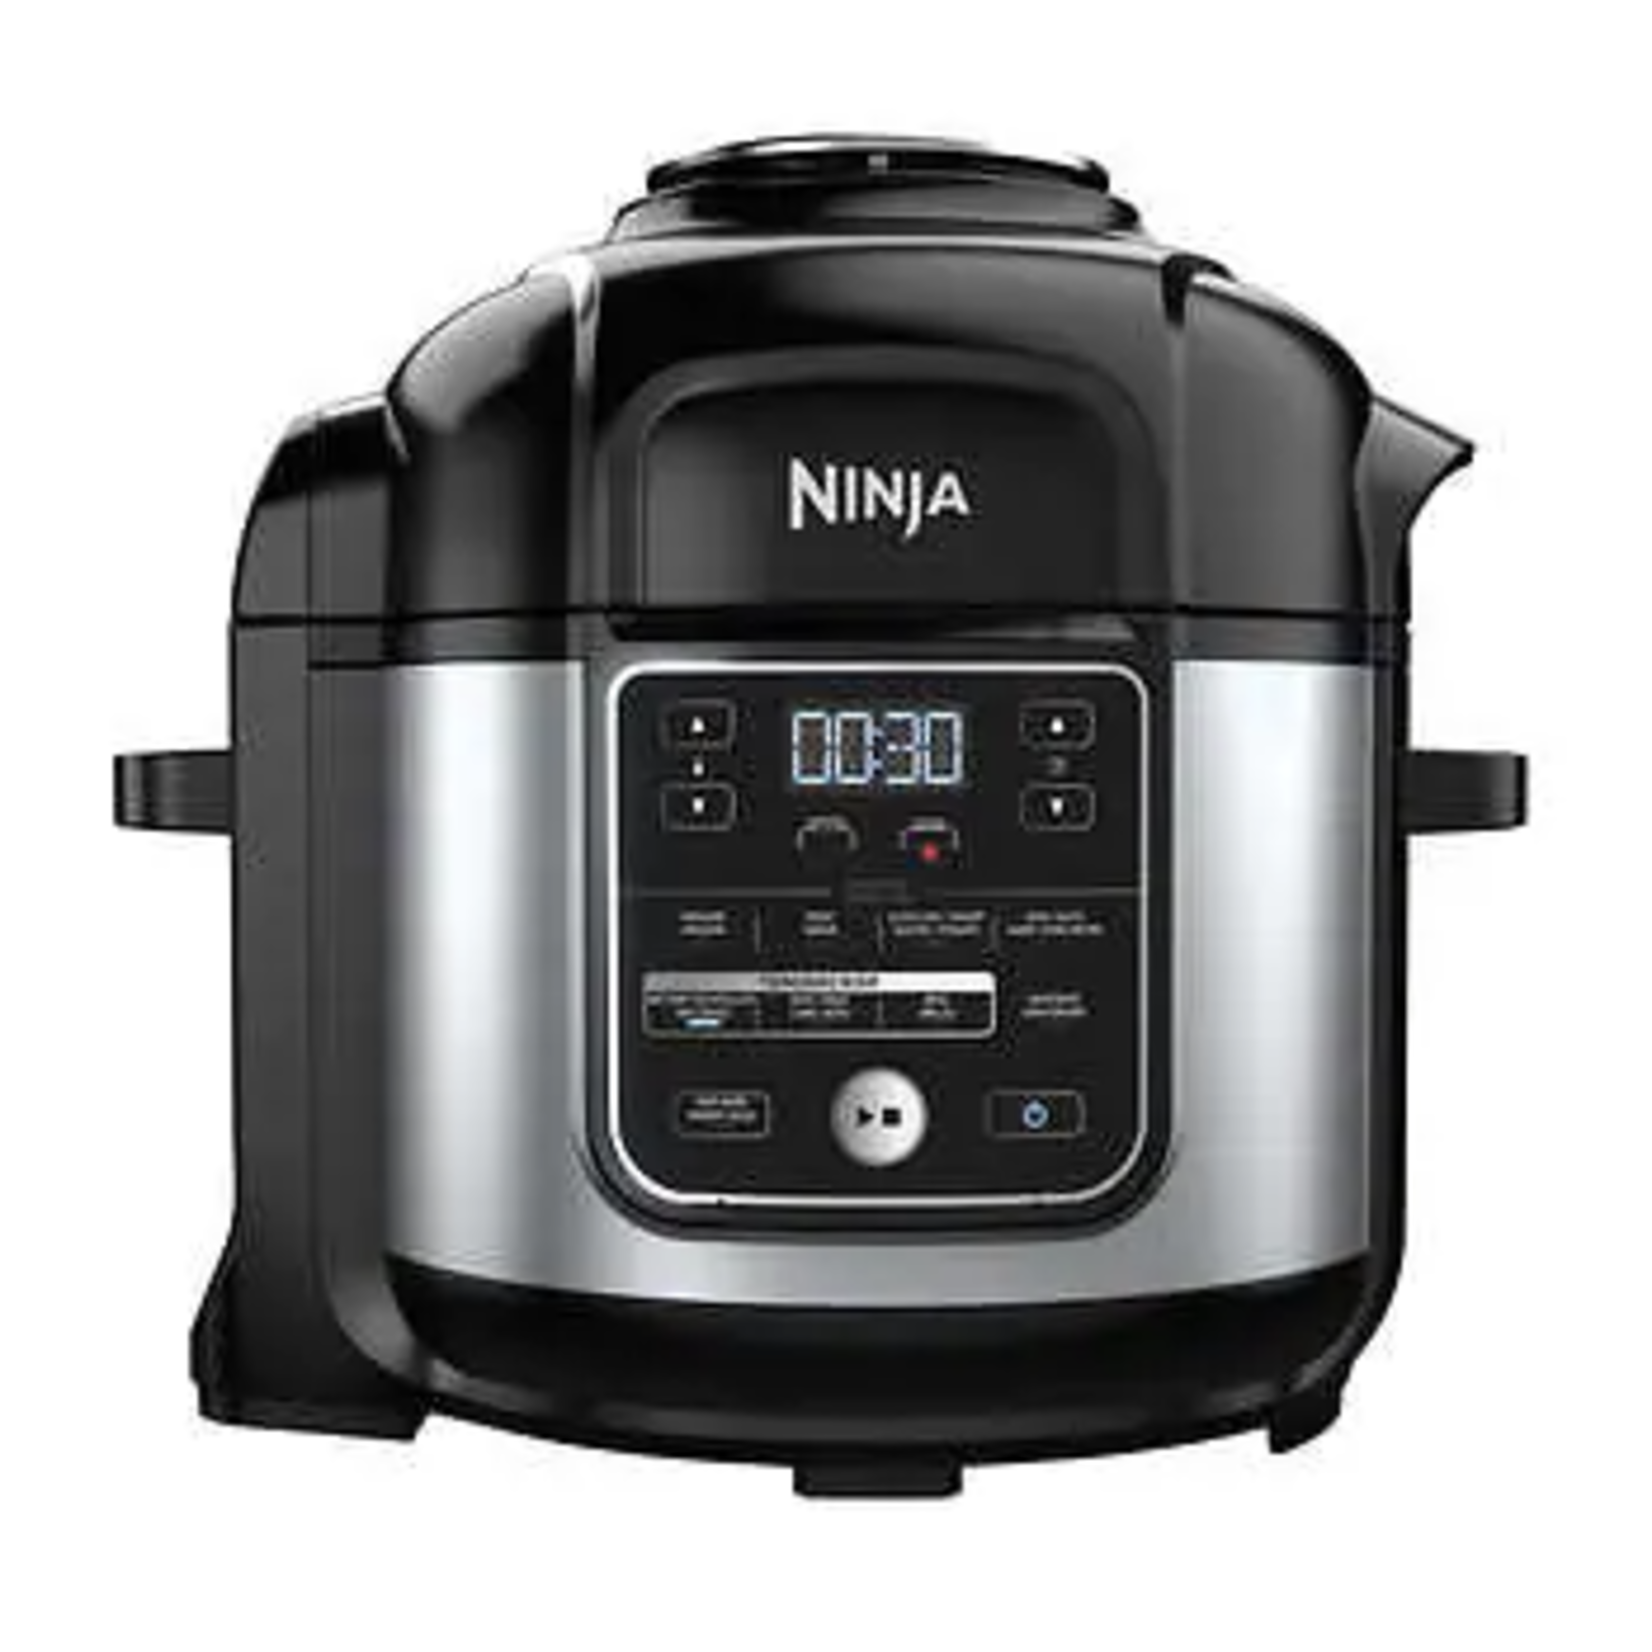 Ninja Foodi 8 qt. Pressure Cooker Air Fryer, Multicooker, Pressure Cooker